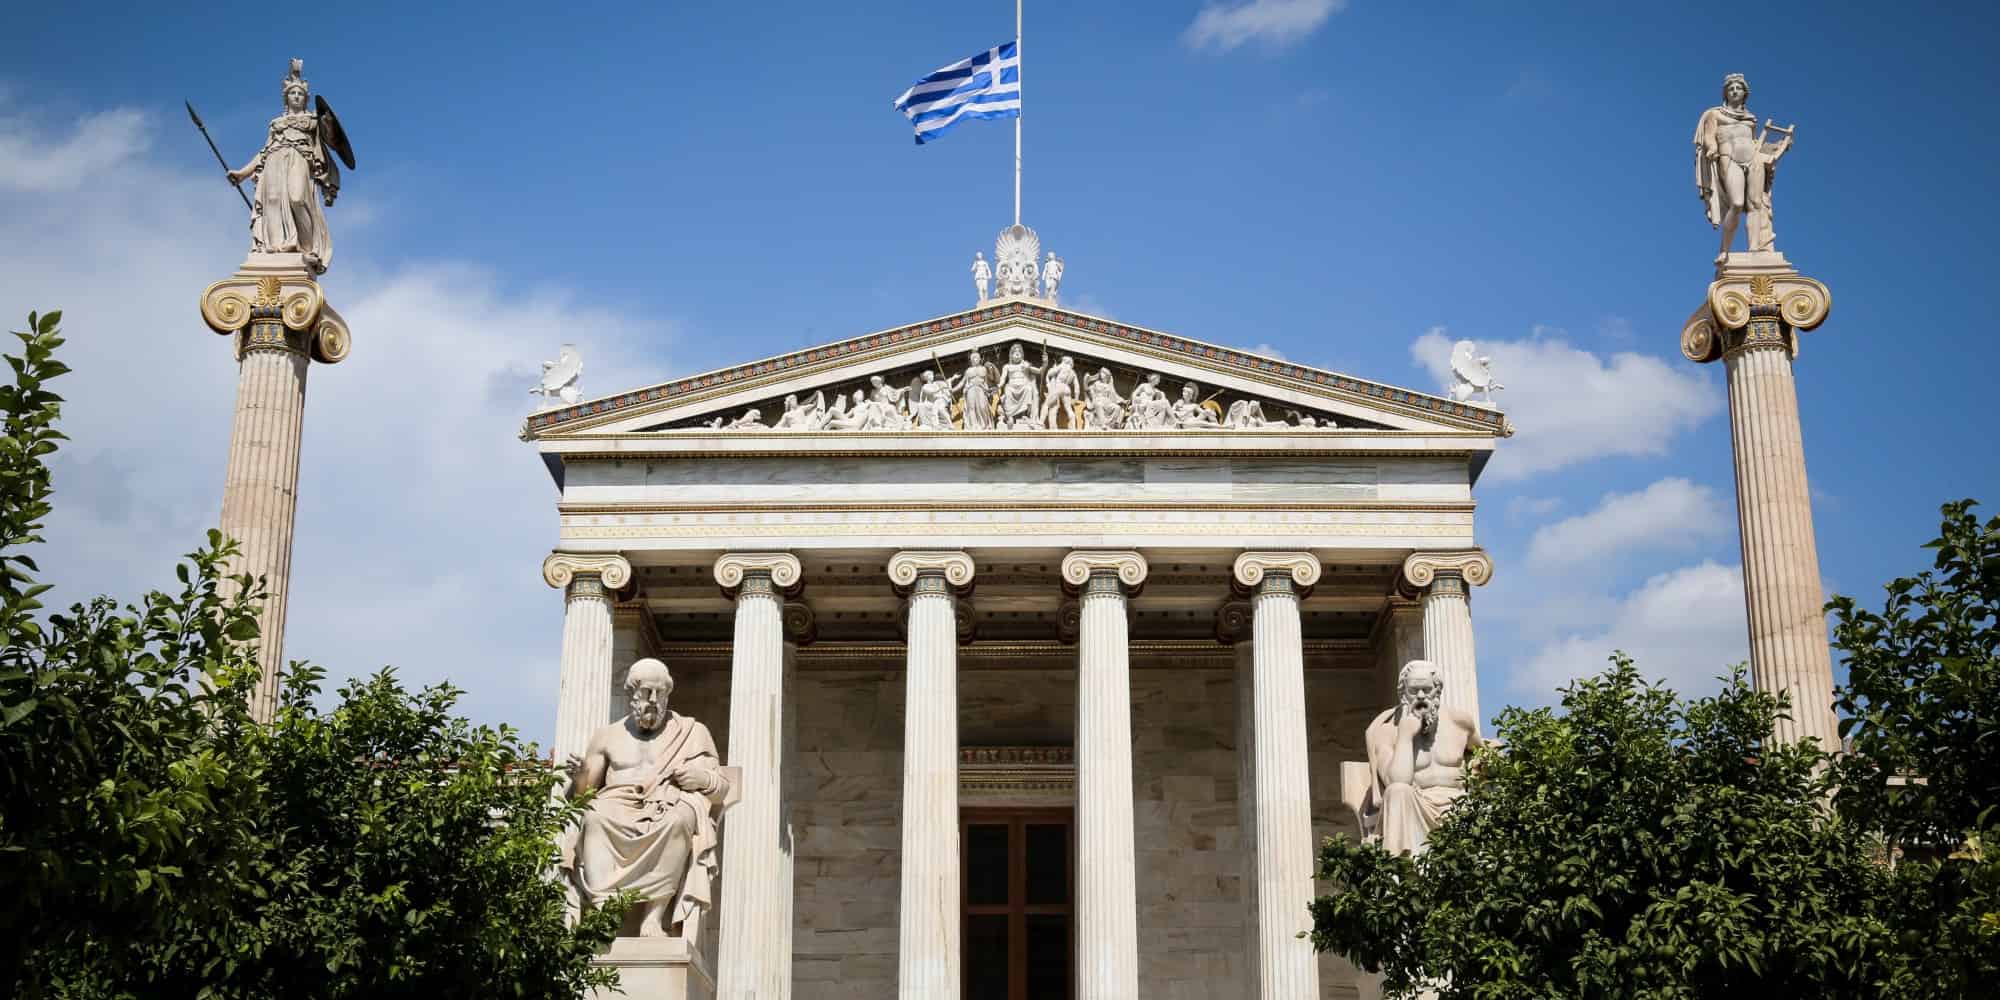 Η Ακαδημία Αθηνών